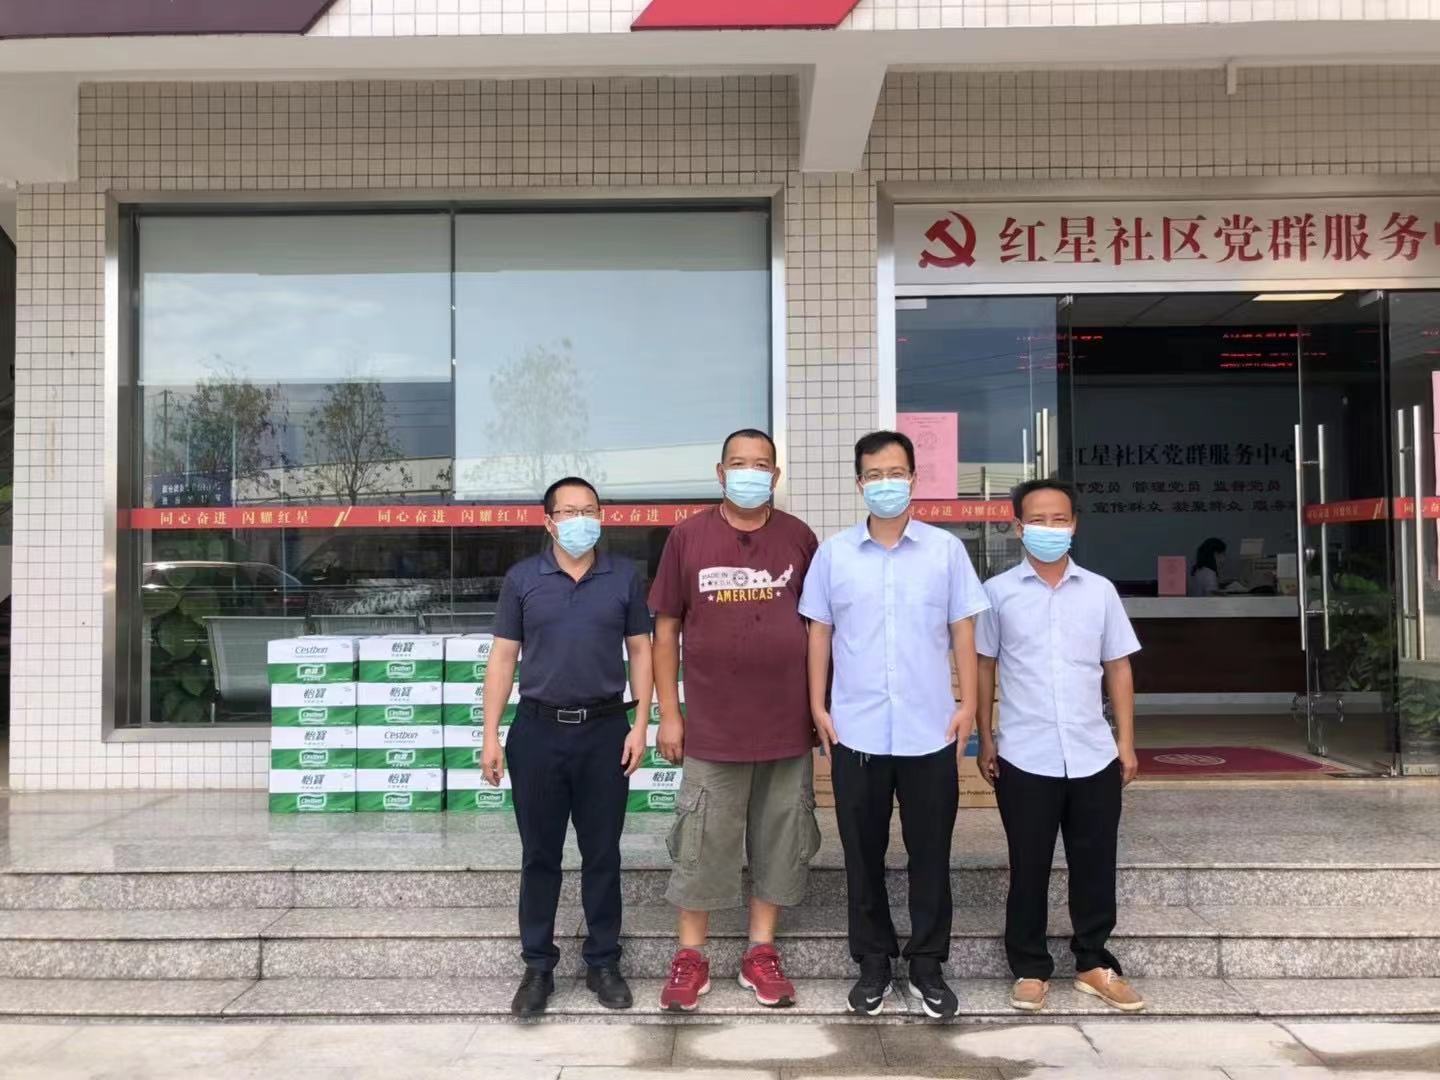 Firma Rayson walczy z epidemią razem ze wszystkimi ludźmi w Nanhai